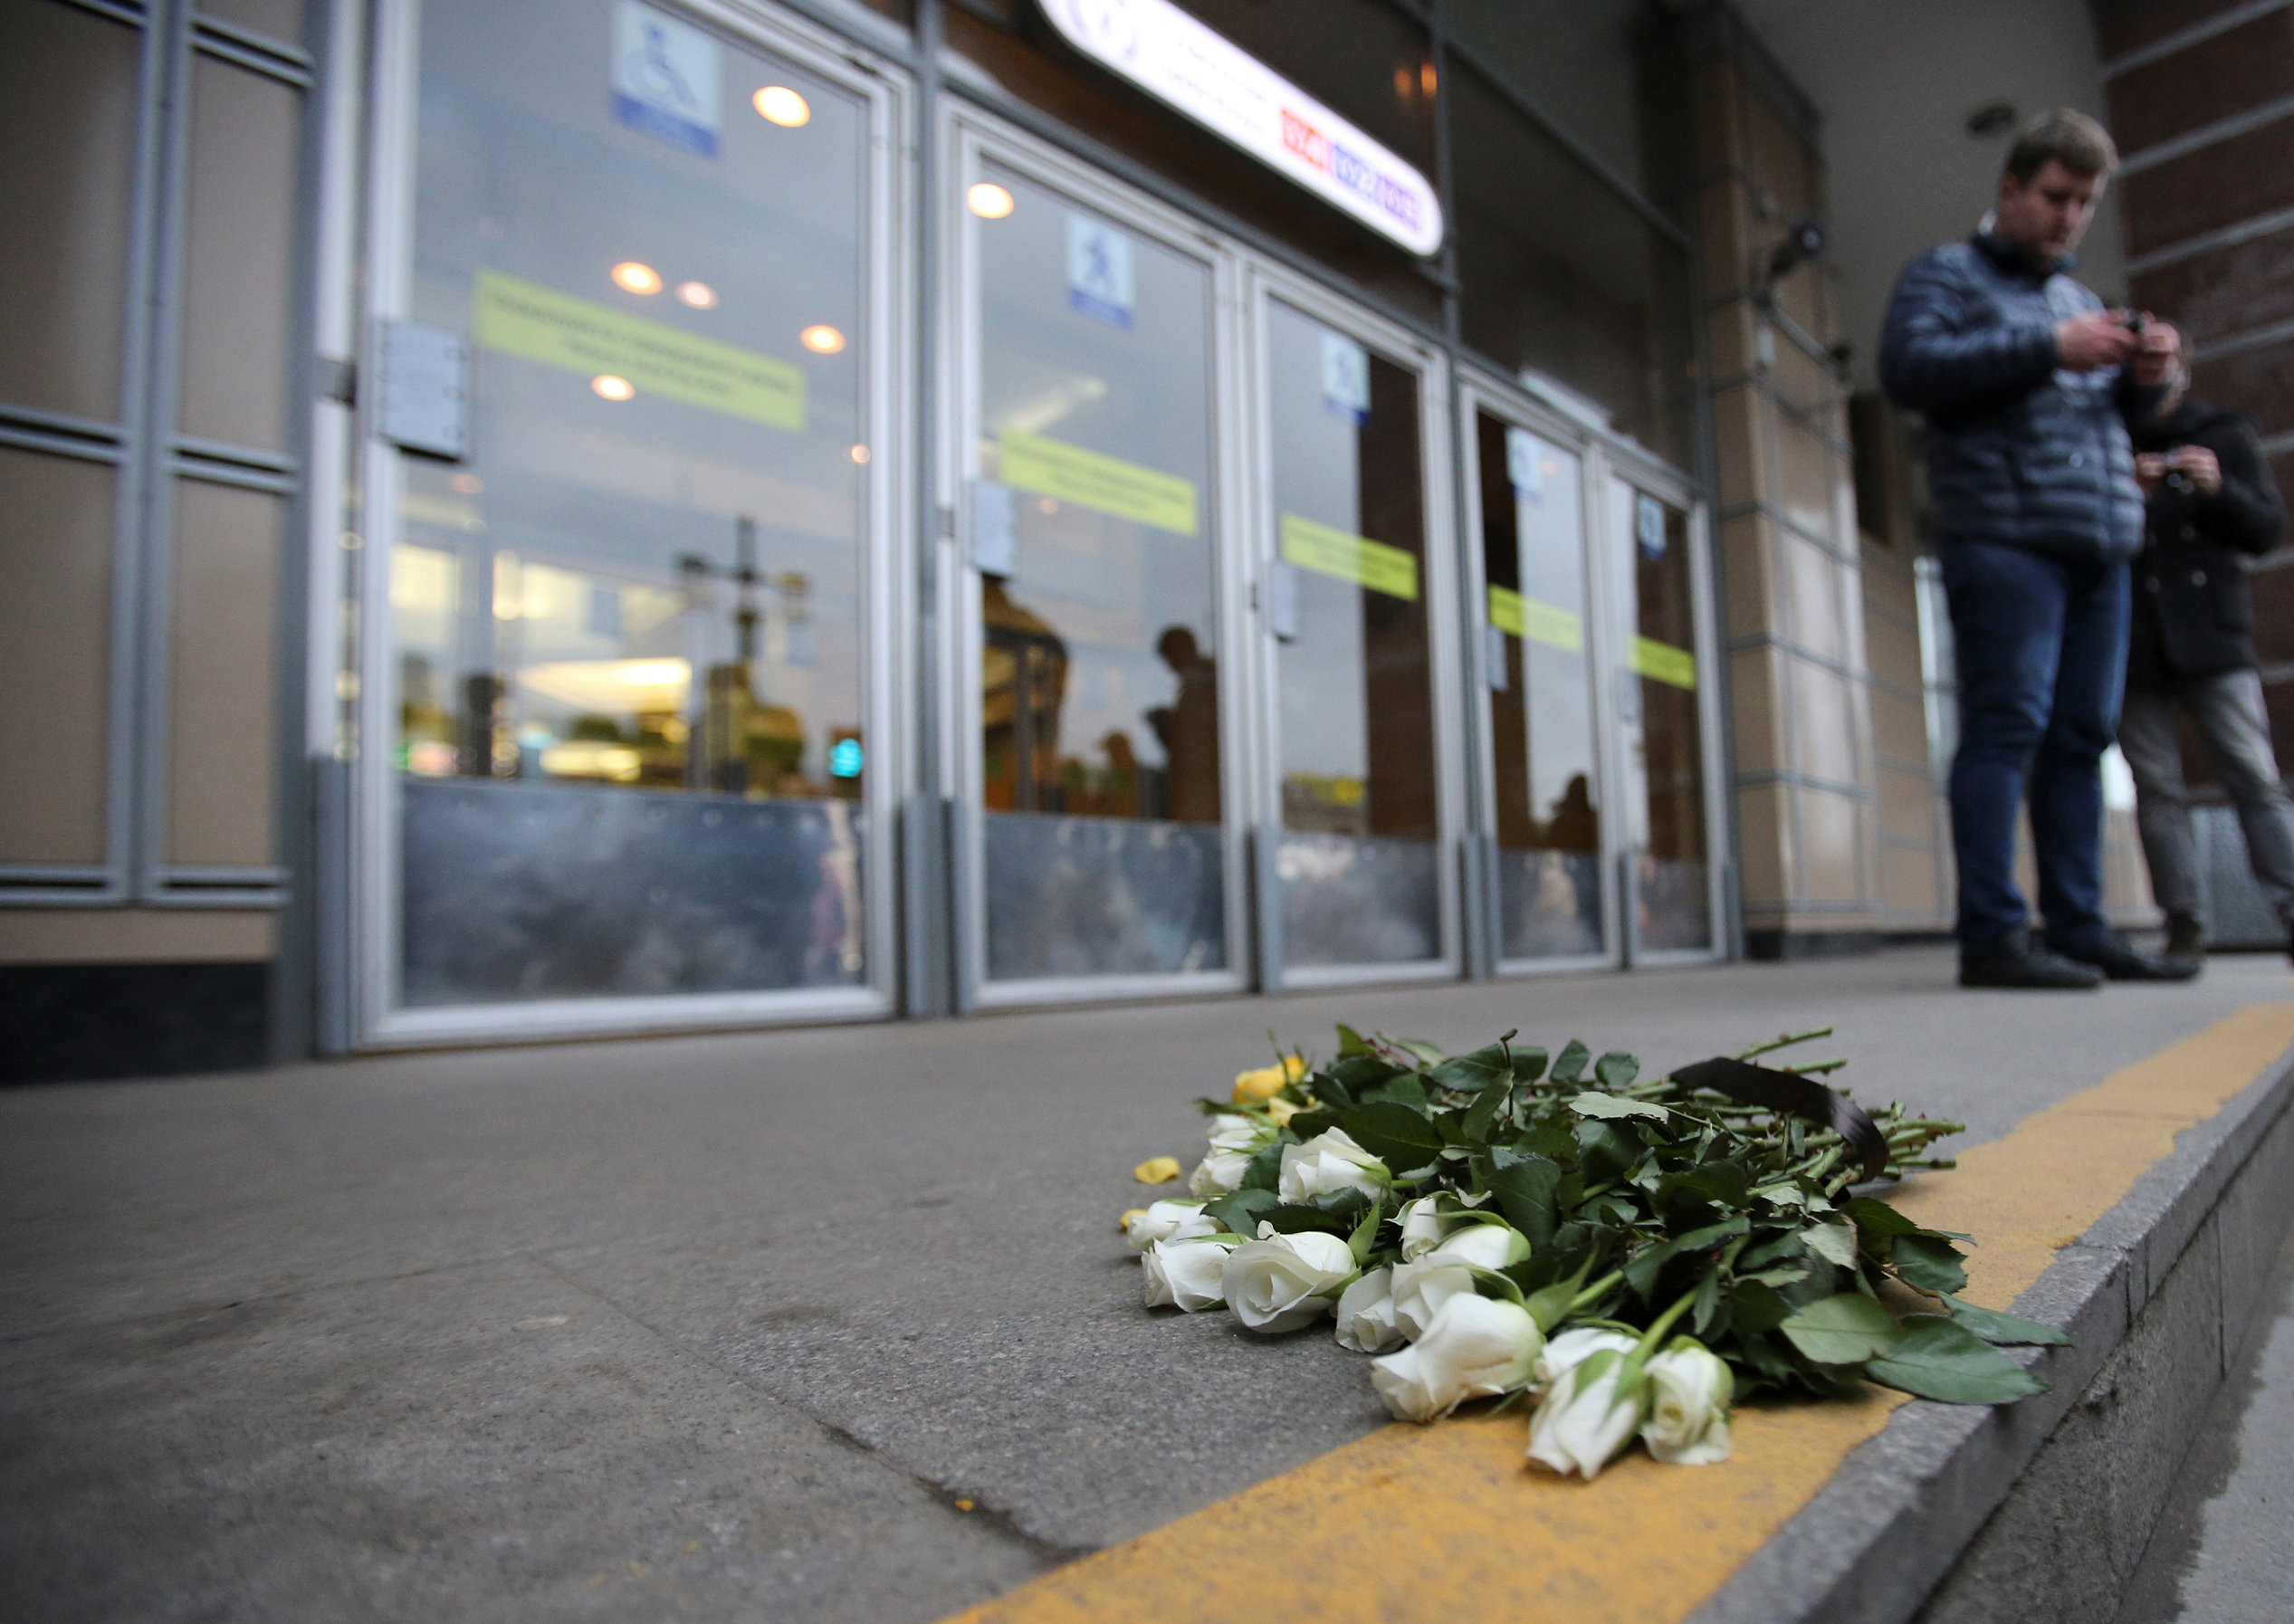 وضع أكاليل الزهور تكريما لضحايا حادث انفجار مترو بطرسبرج